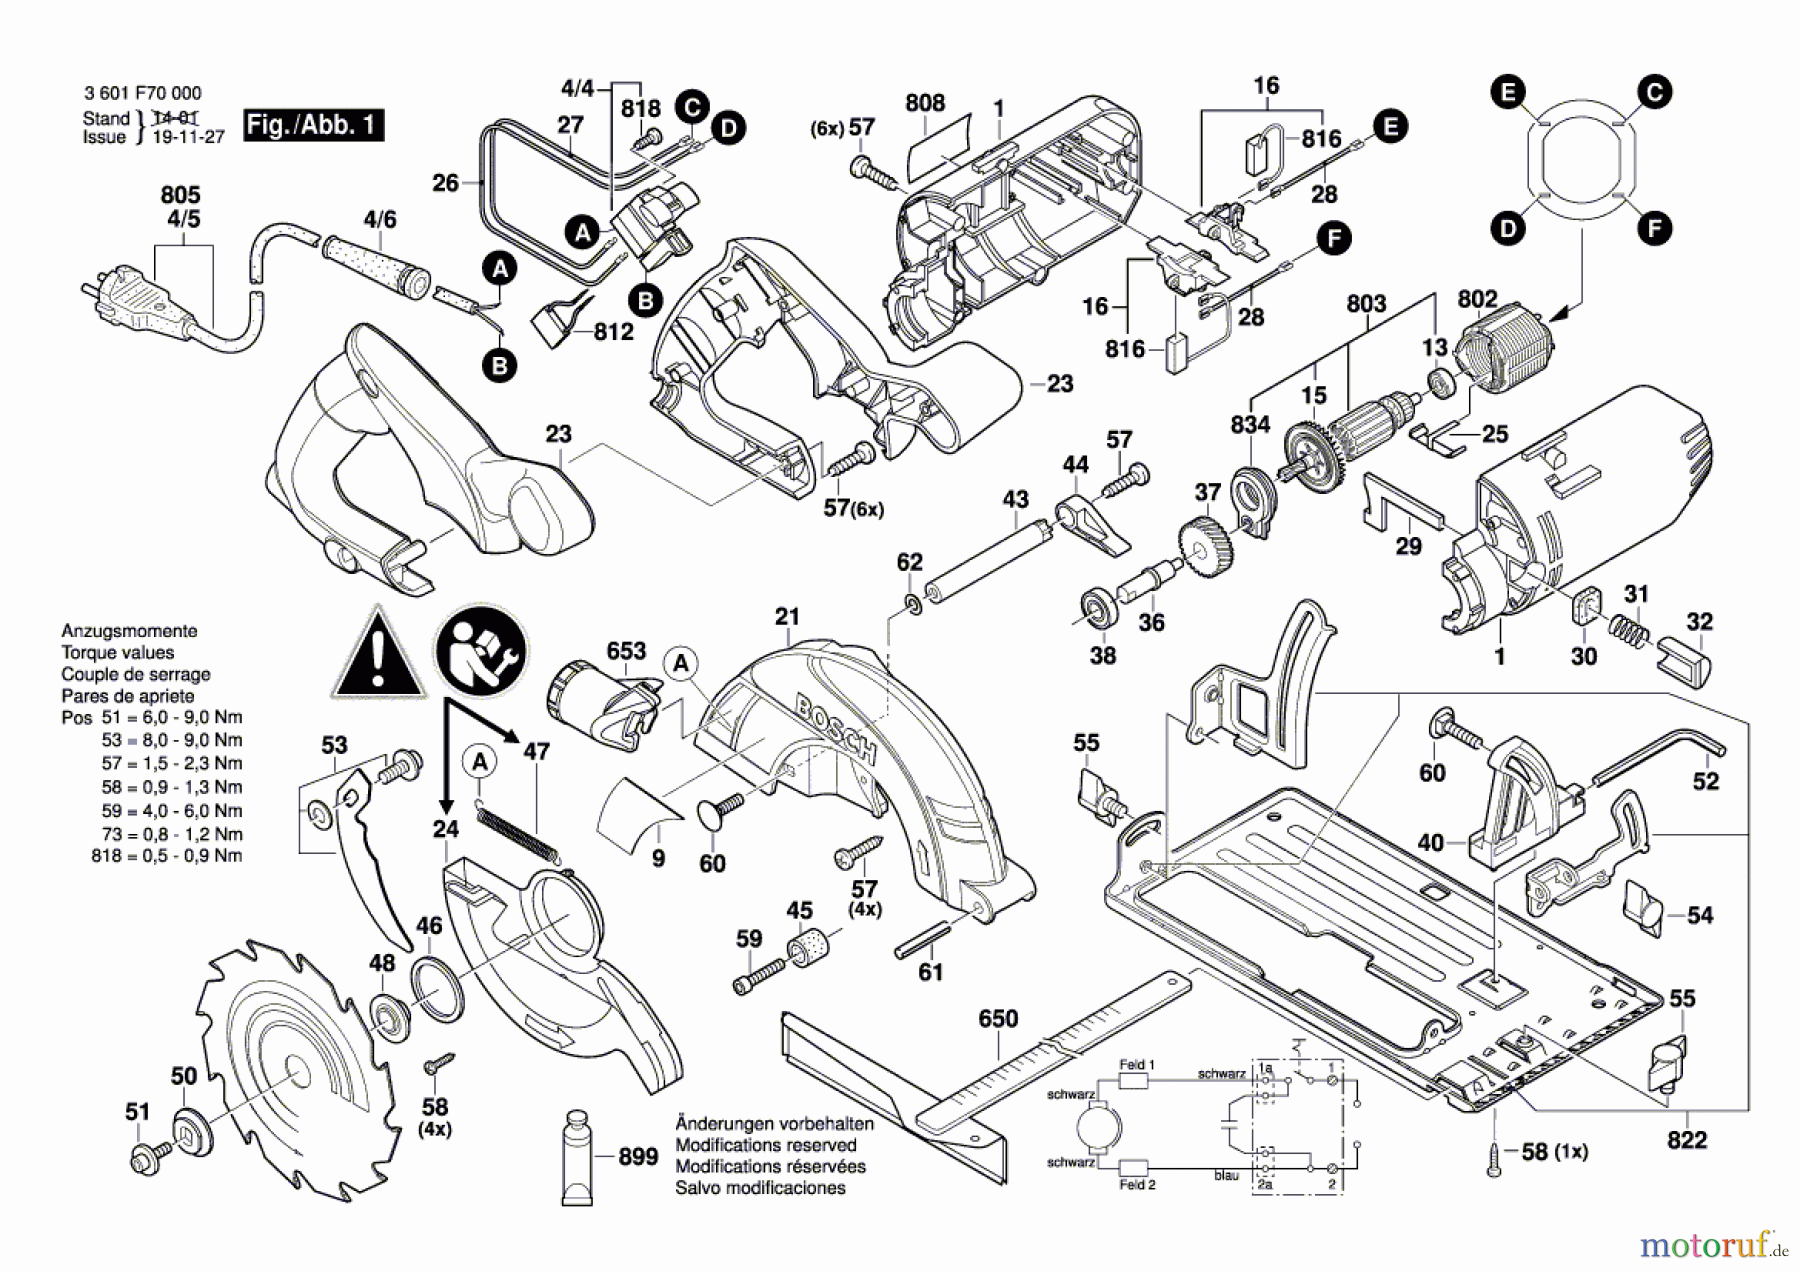  Bosch Werkzeug Handkreissäge GKS 160 Seite 1